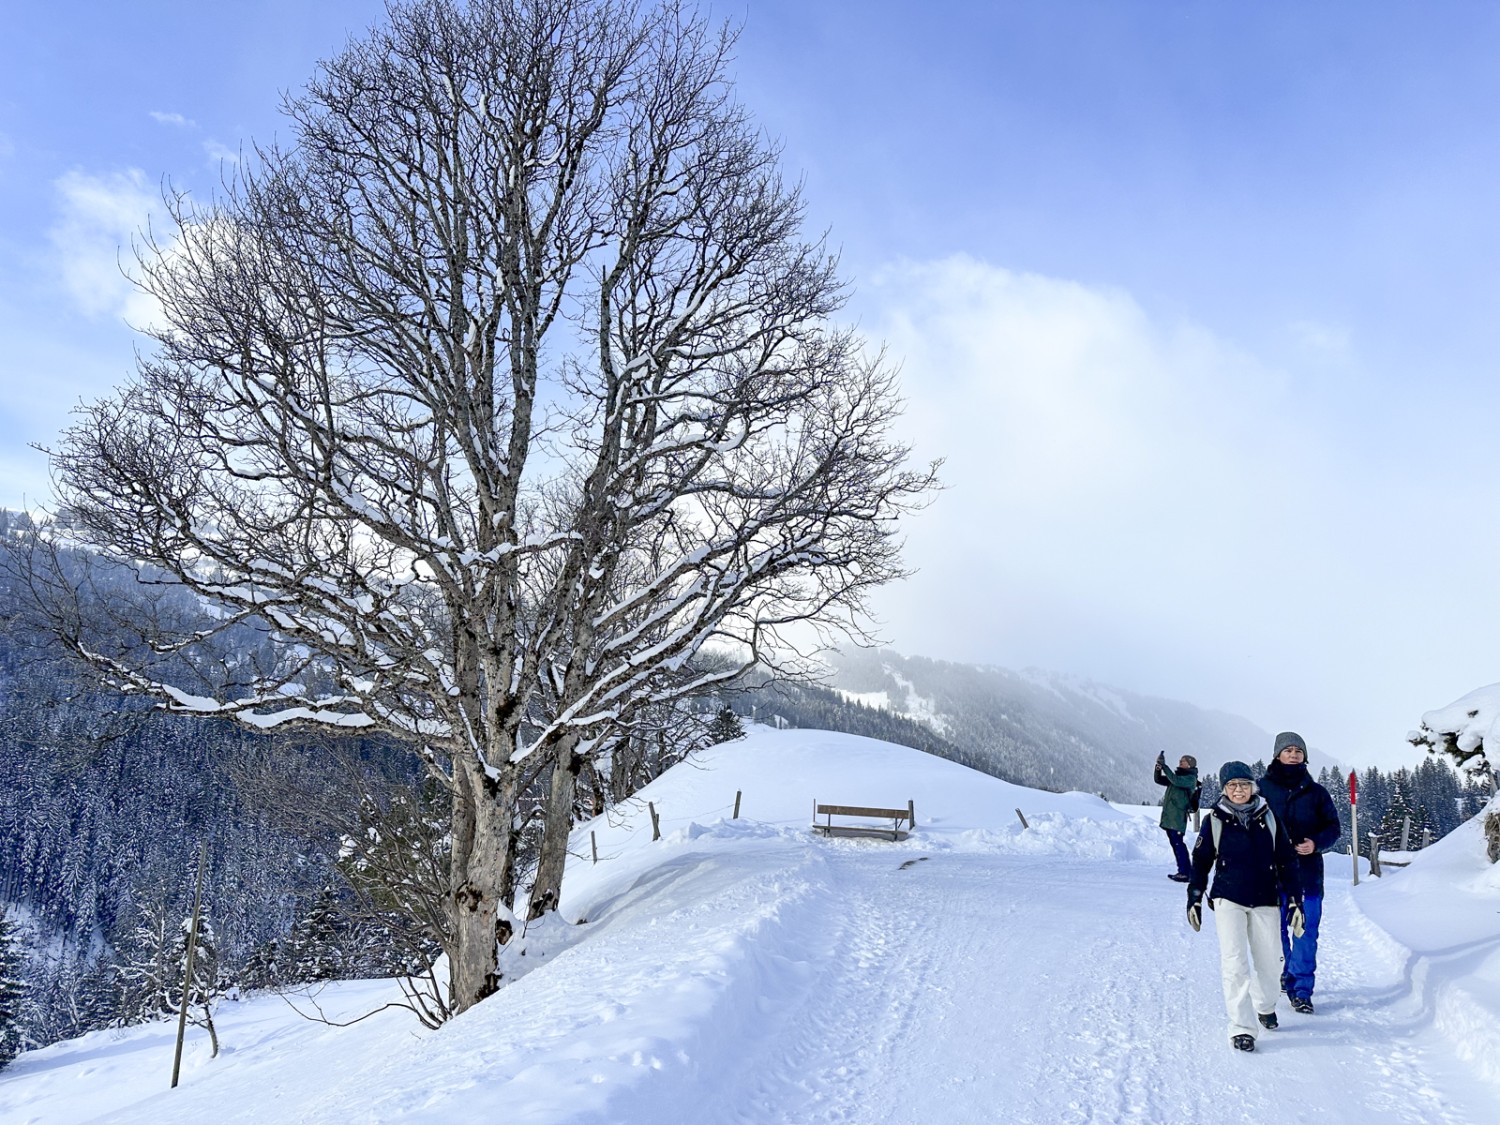 Le chemin de randonnée hivernale passe par une route large et damée. Photo: Thomas Gloor